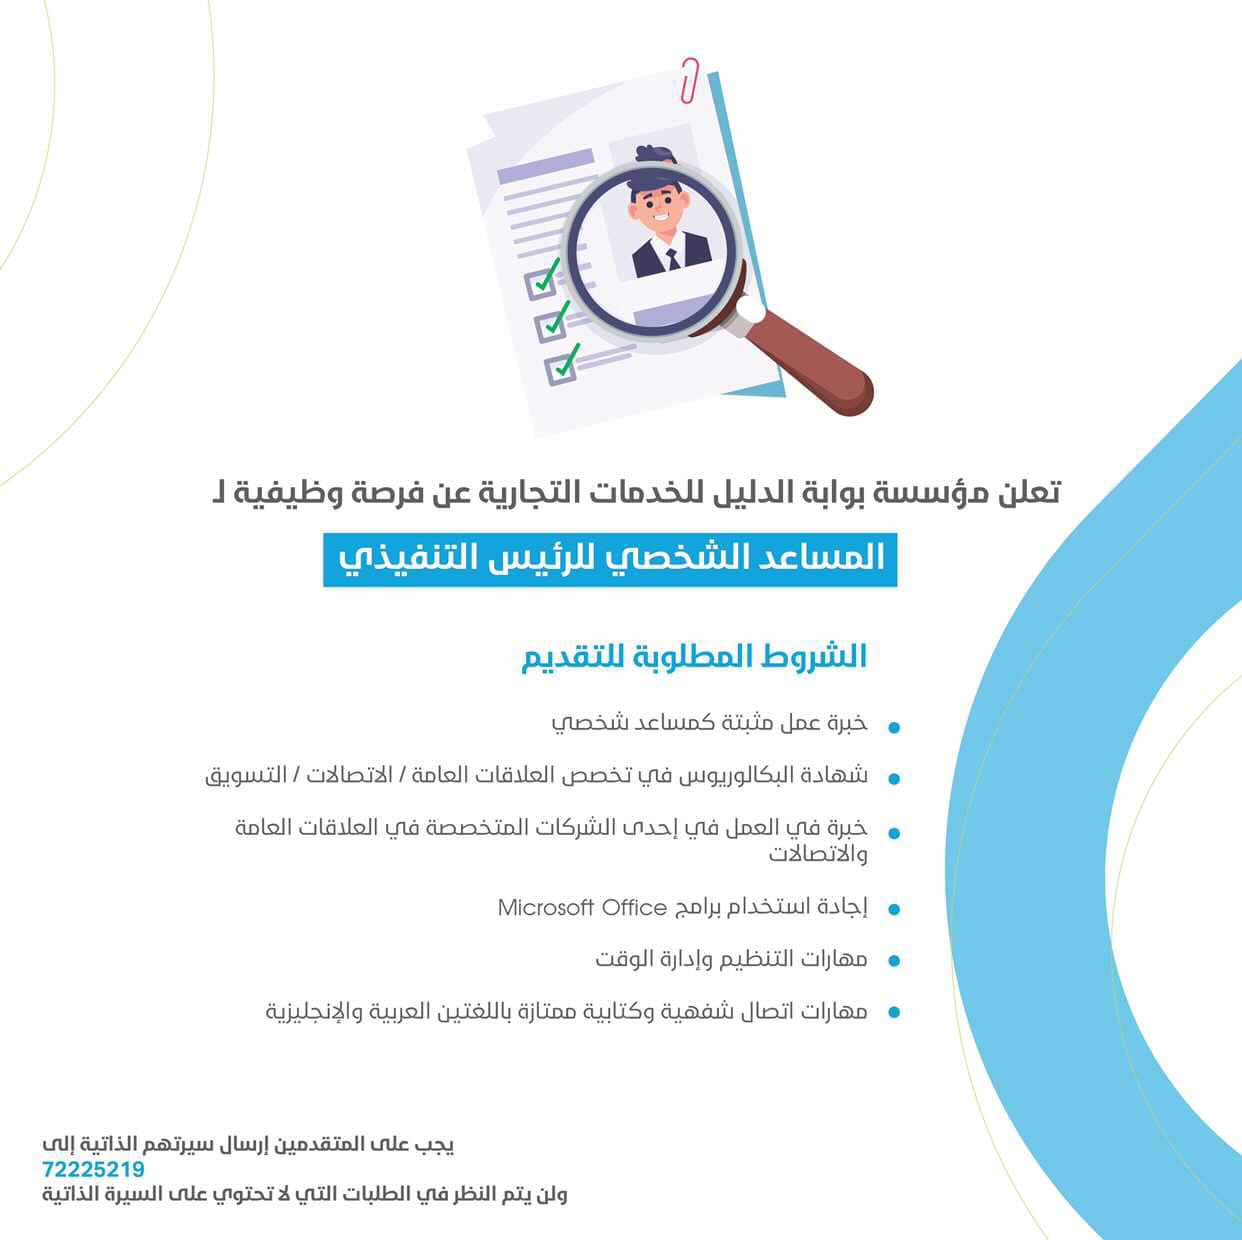 وظائف مؤسسة بوابة الدليل للخدمات التجارية 2023 في سلطنة عمان لجميع الجنسيات